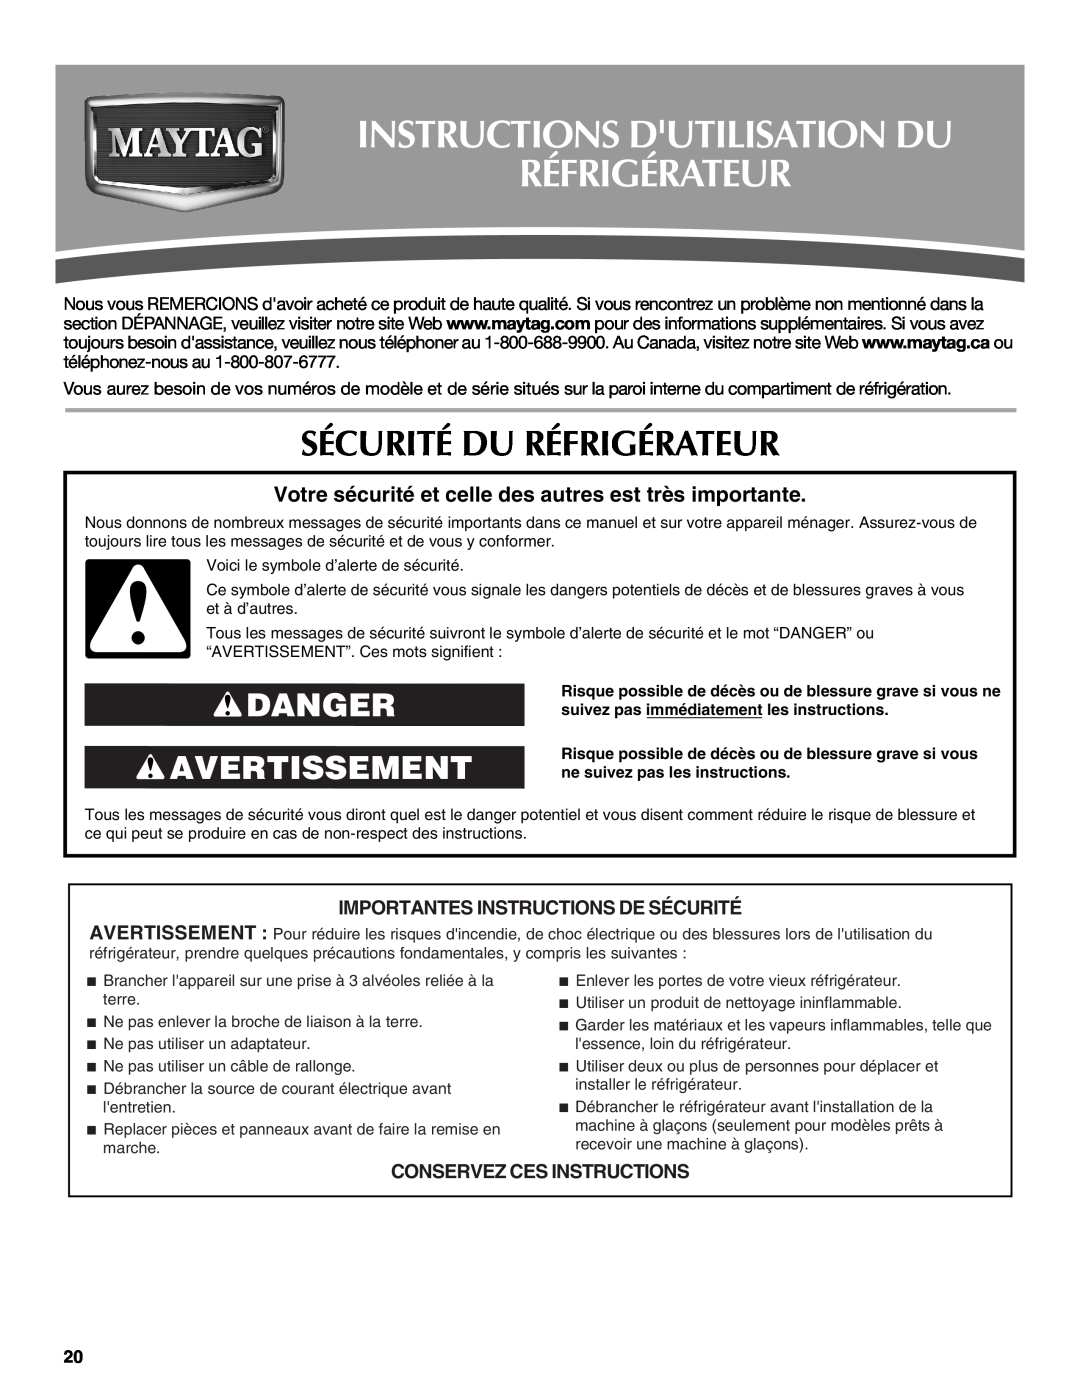 Maytag MBL2258XES, W10208790A Instructions Dutilisation Du Réfrigérateur, Sécurité Du Réfrigérateur, Danger Avertissement 